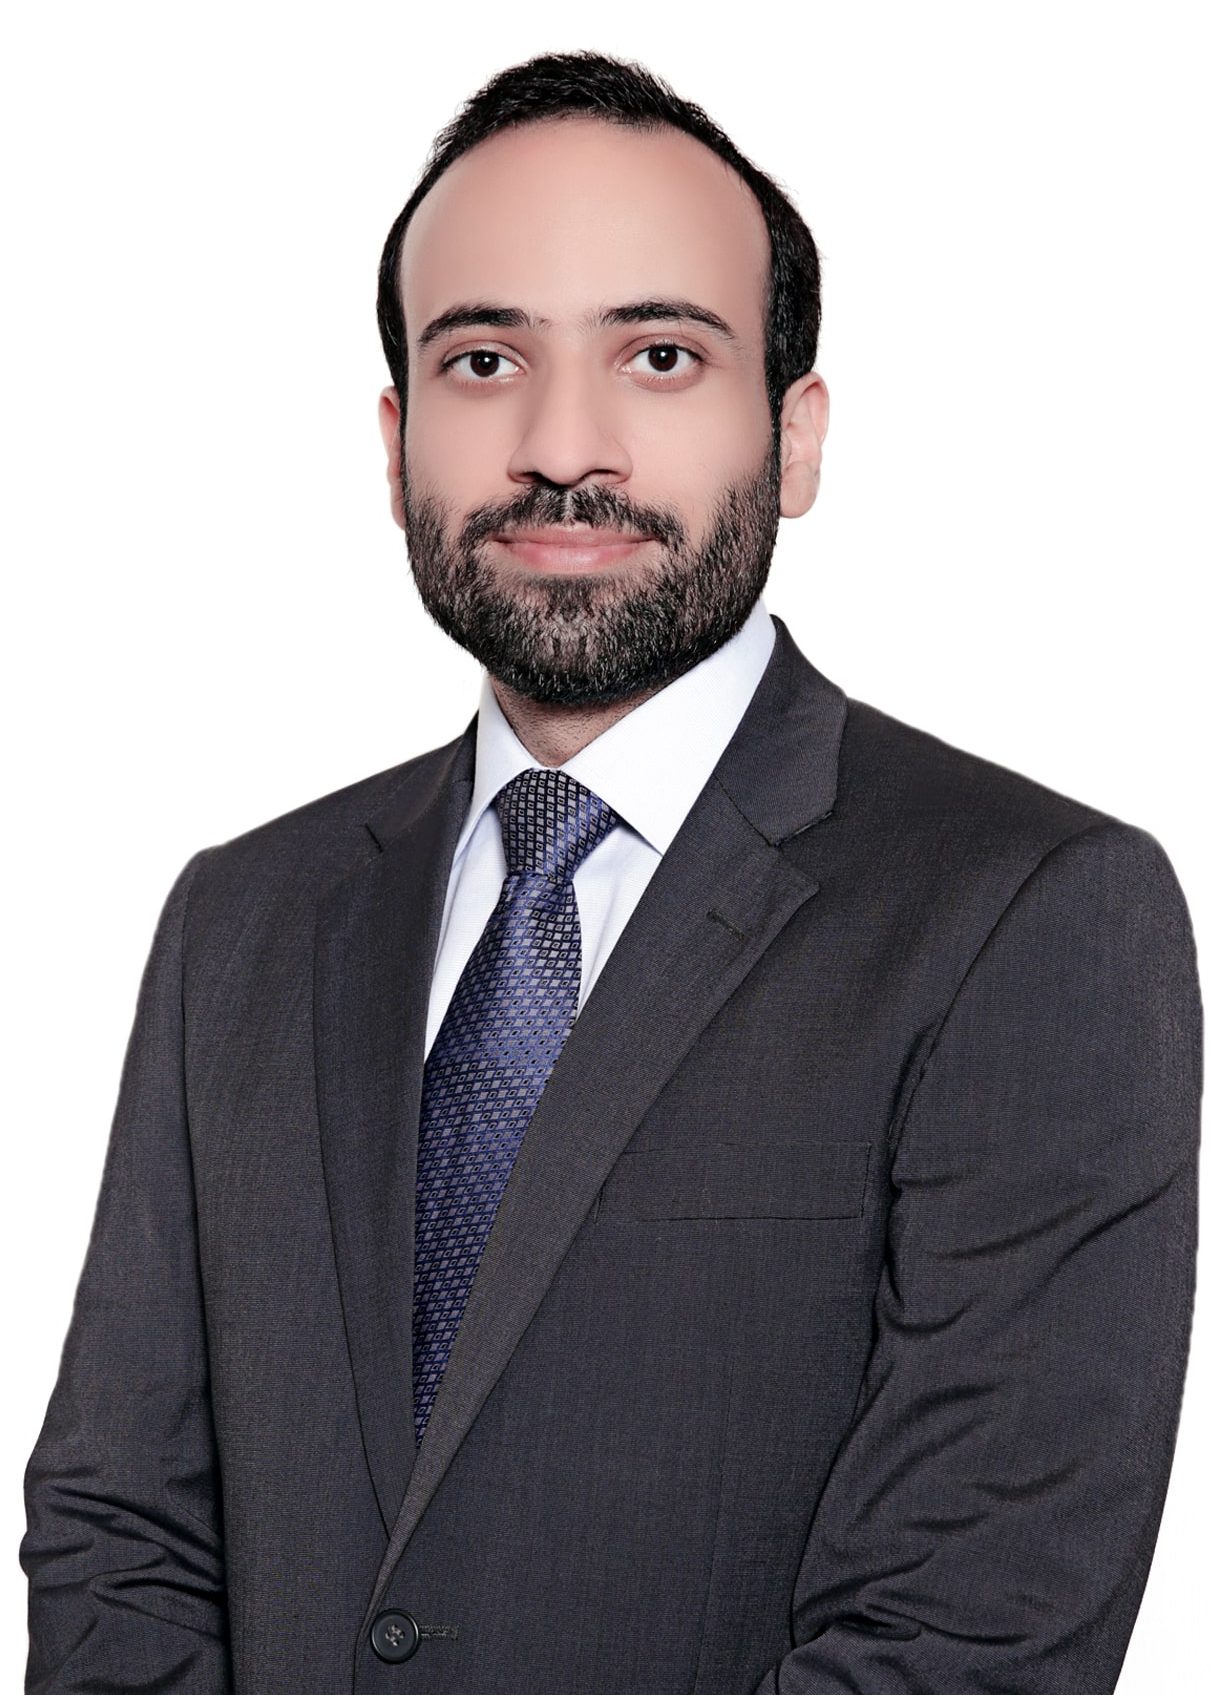 Dr. Mayar Saleh Faris Saleh